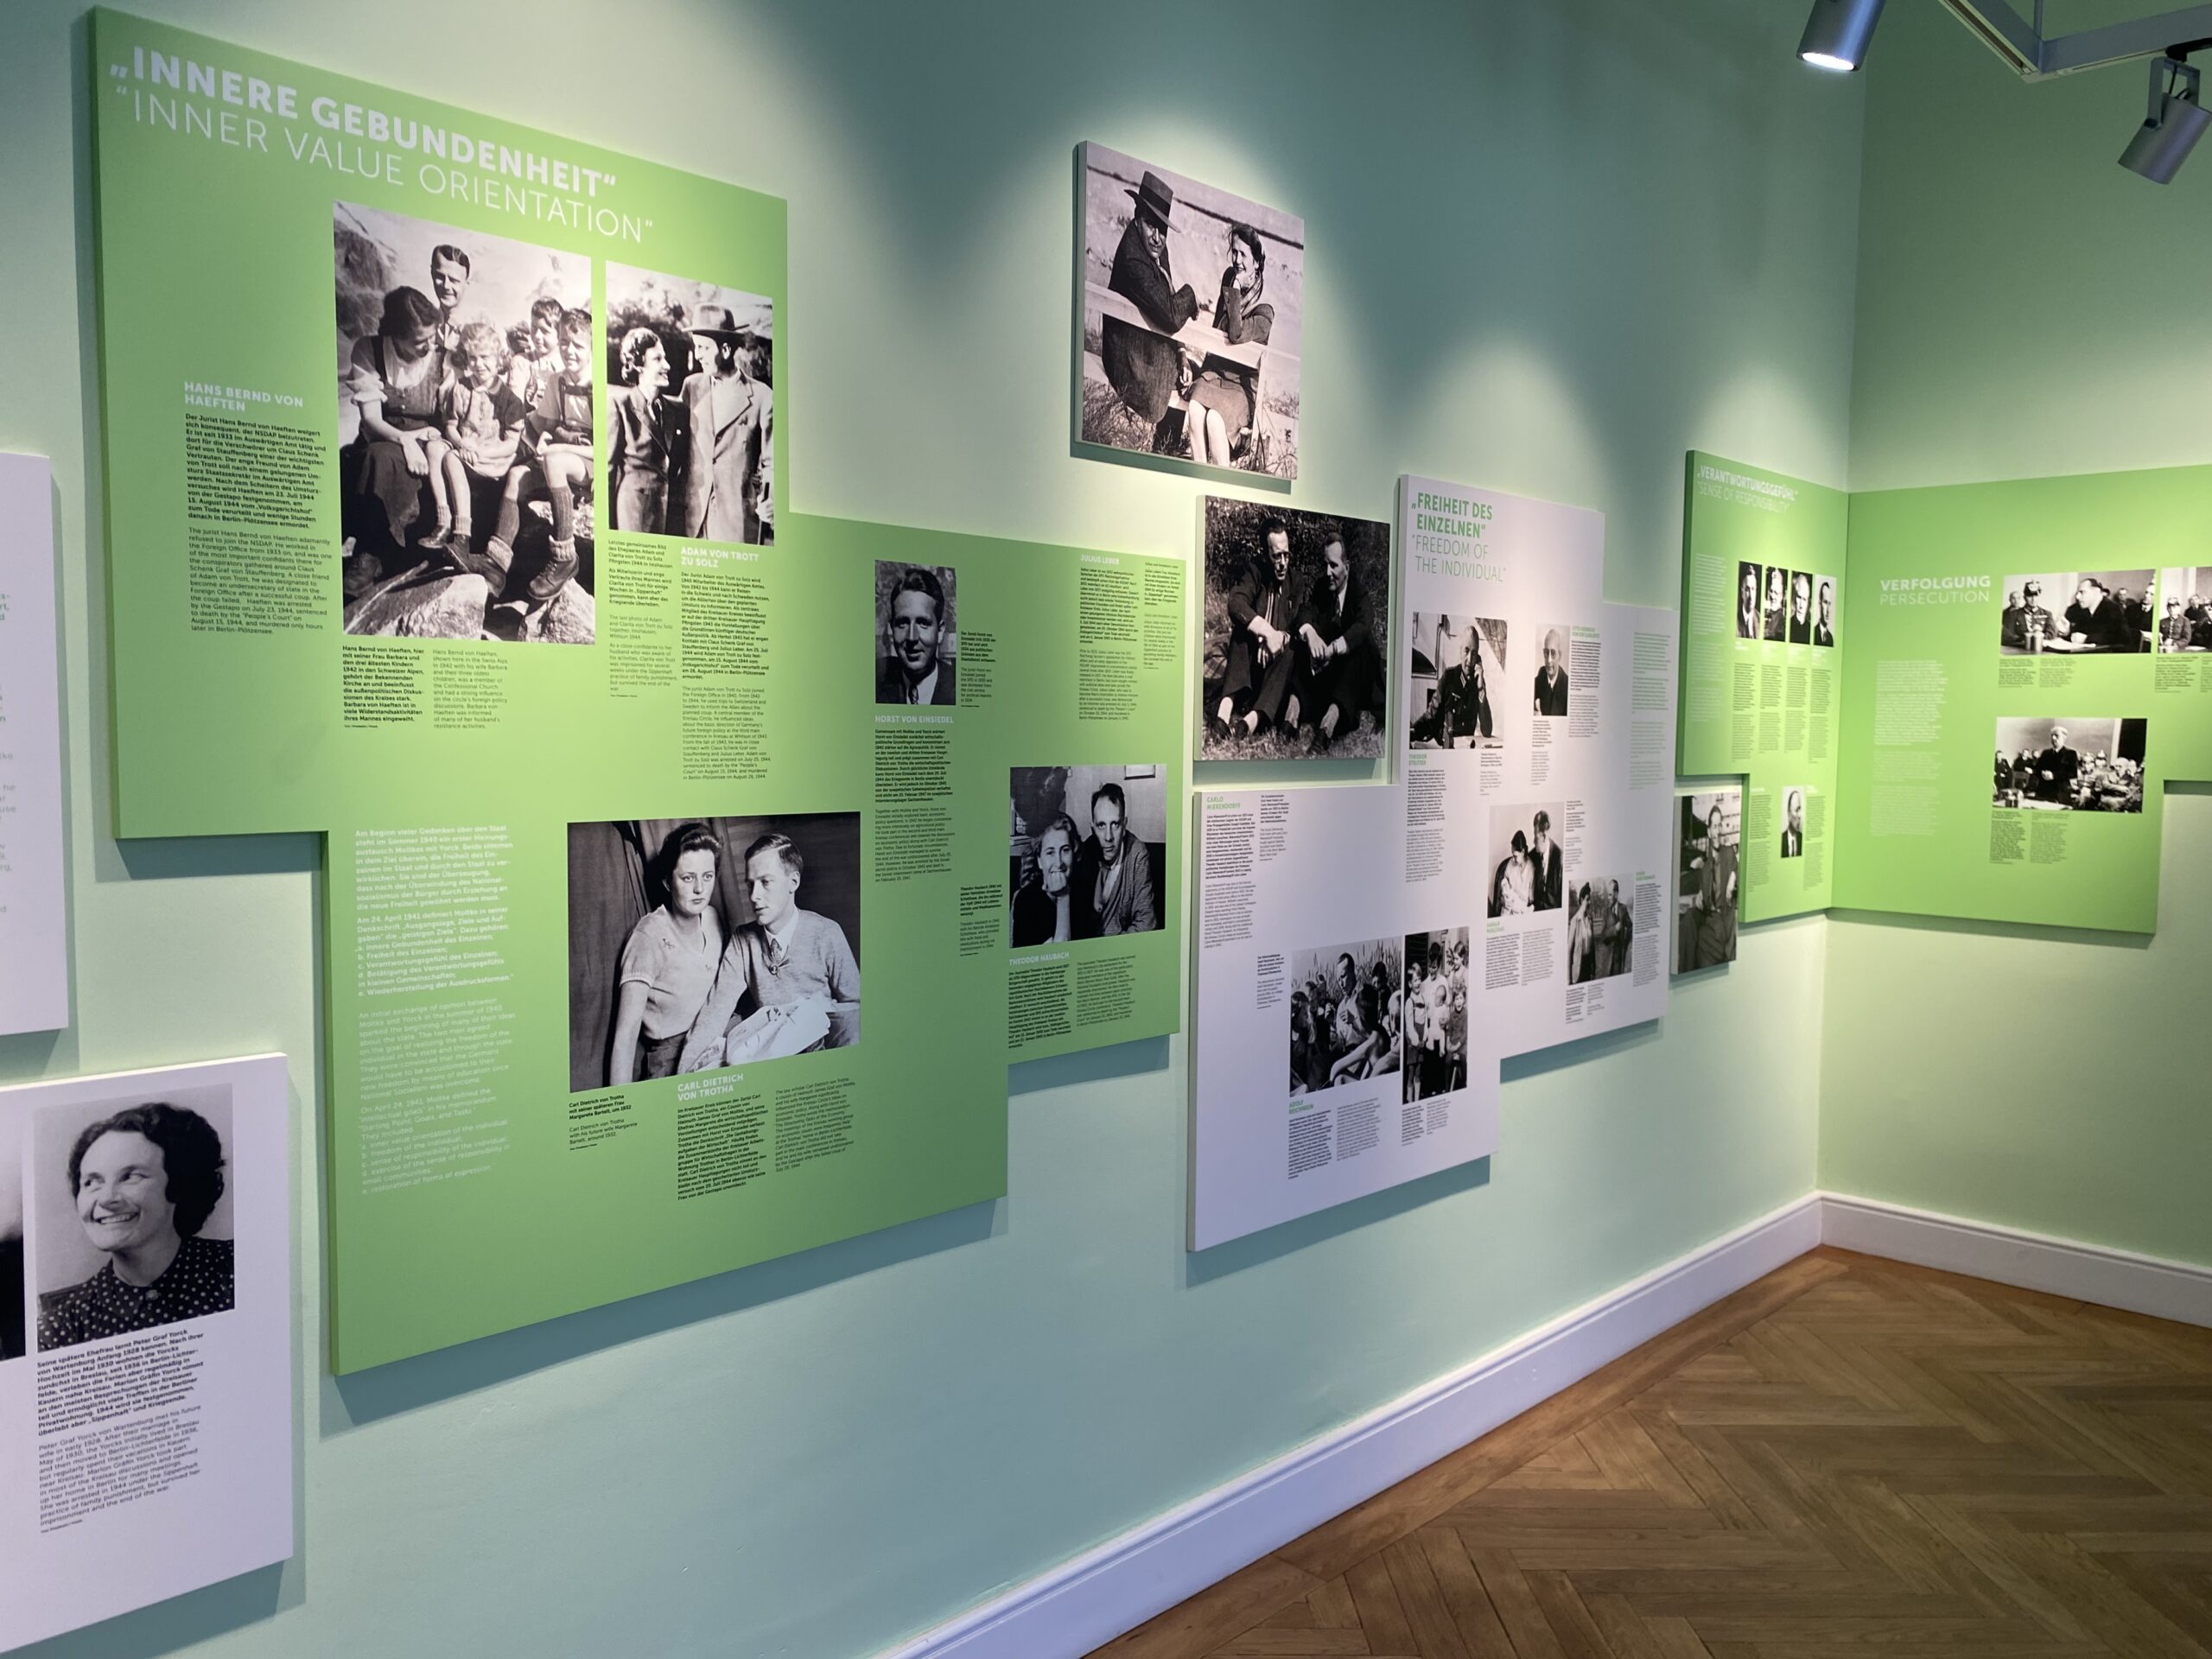 Kreisau Circles leaders in German Resistance museum